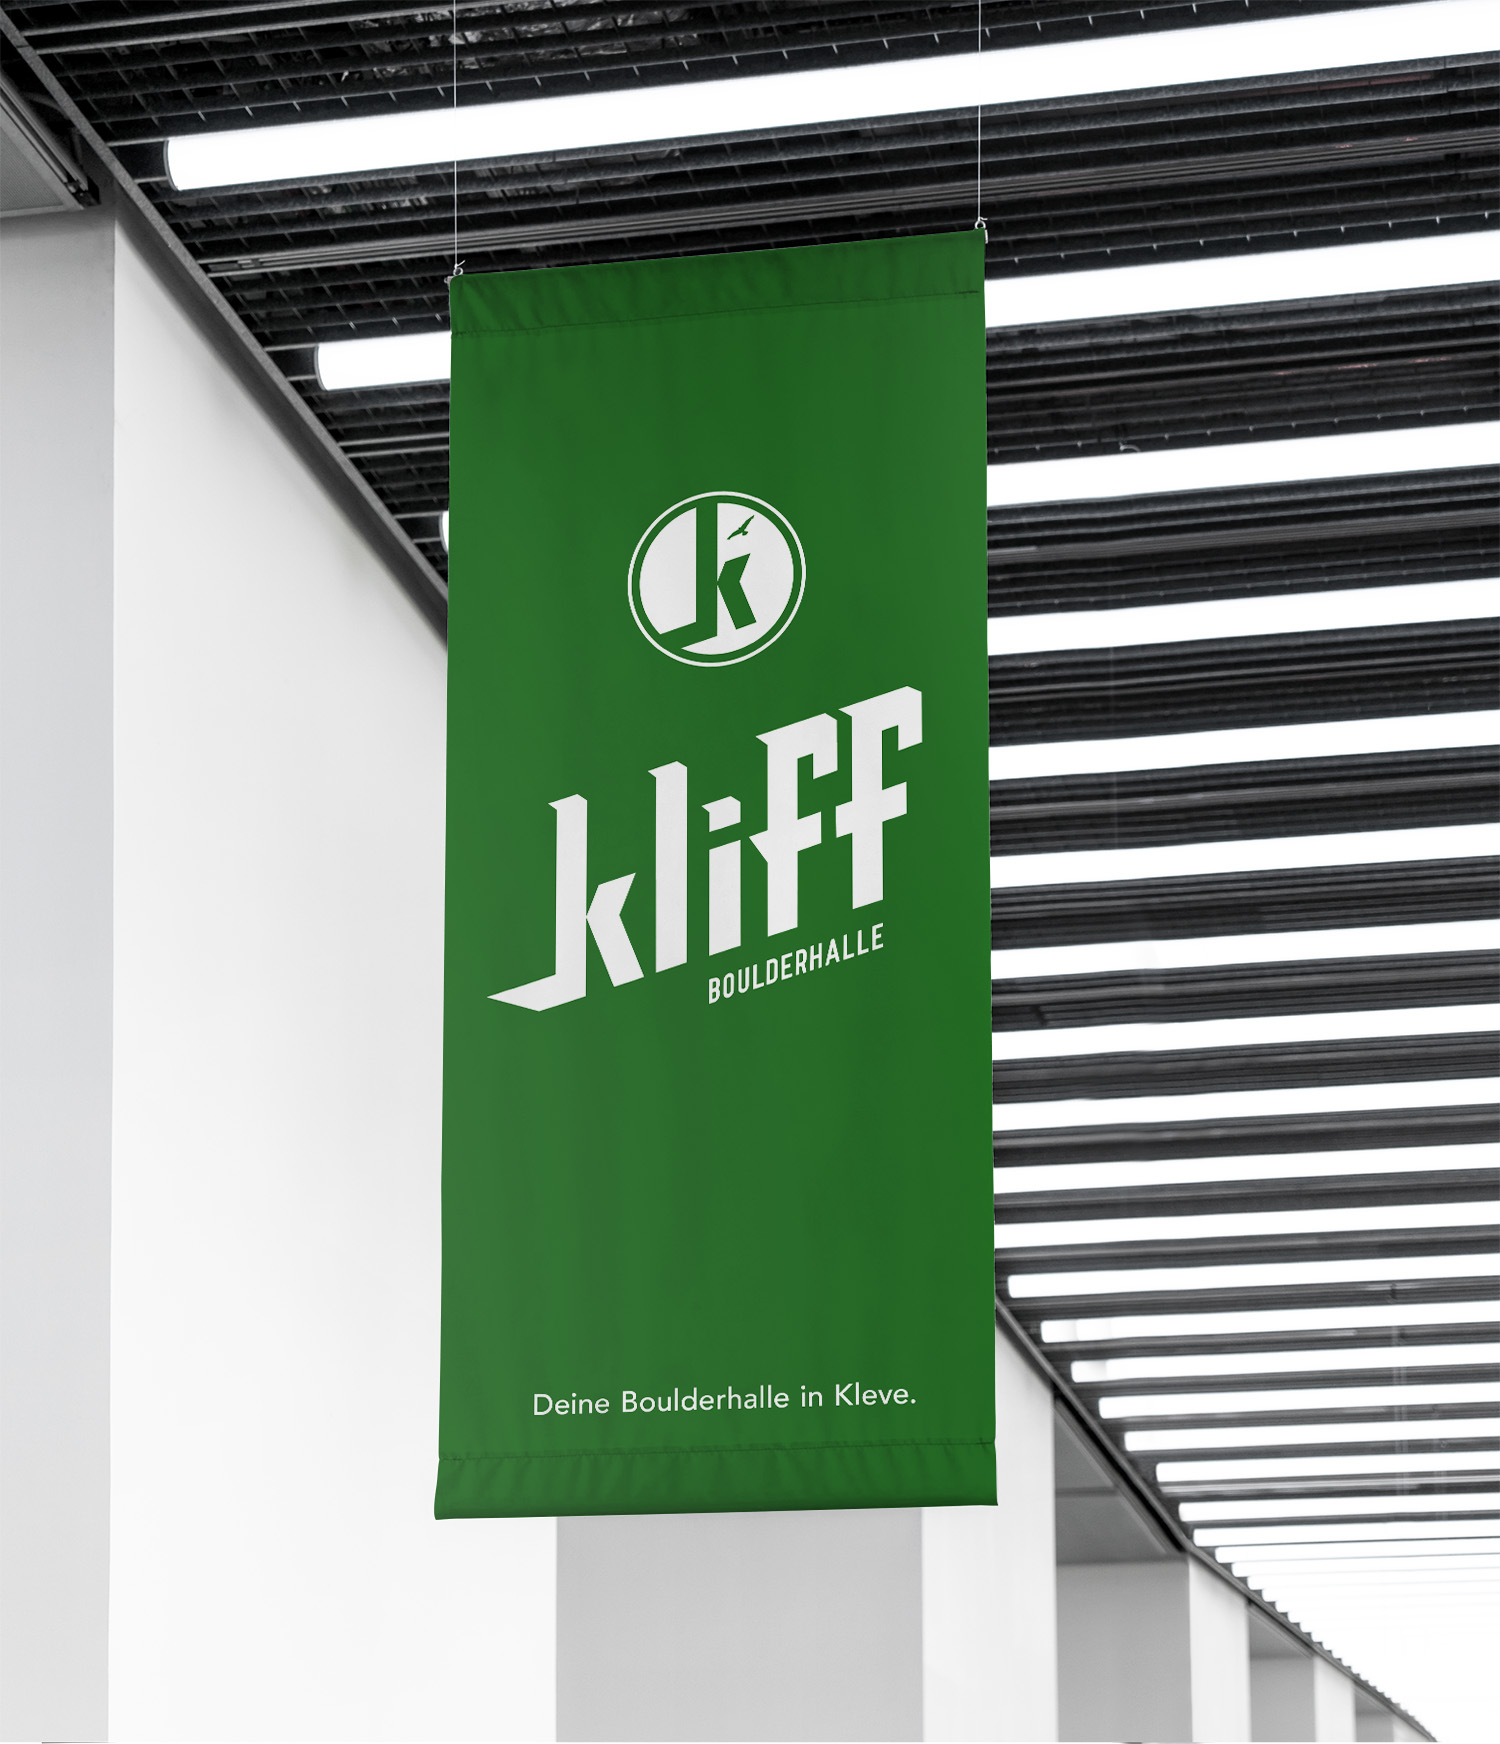 Kliff-Boulderhalle_Justinvanwickeren_Design_flag-inside